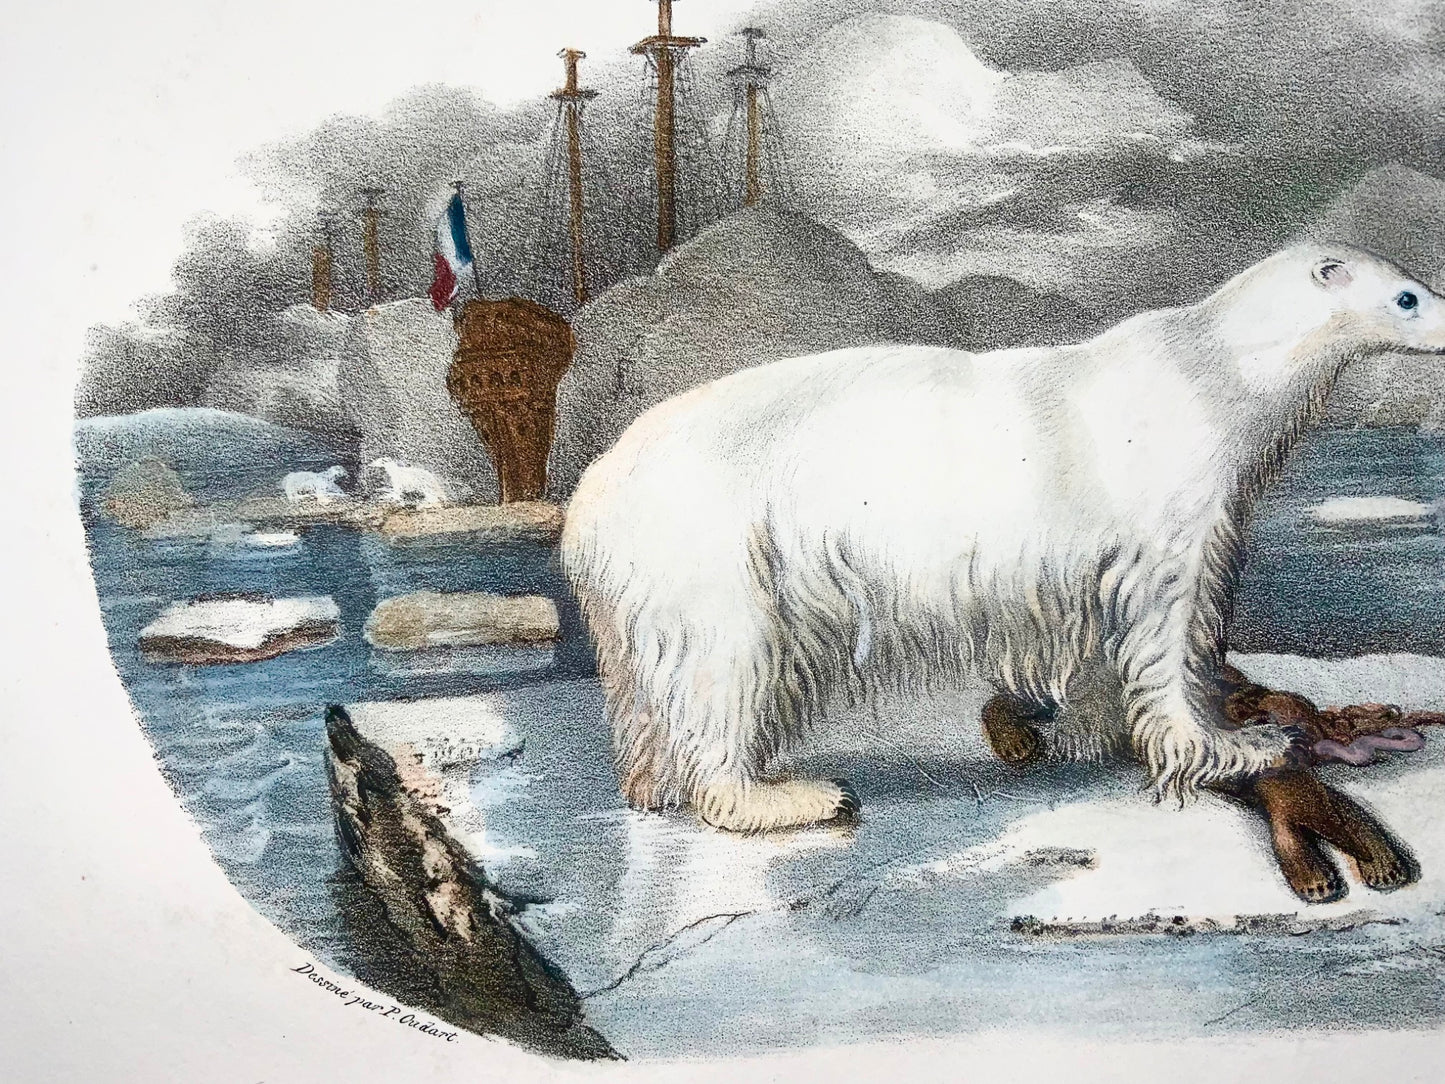 1827 Orso polare, mammifero, Oudart, grande litografia in pietra colorata a mano, rara